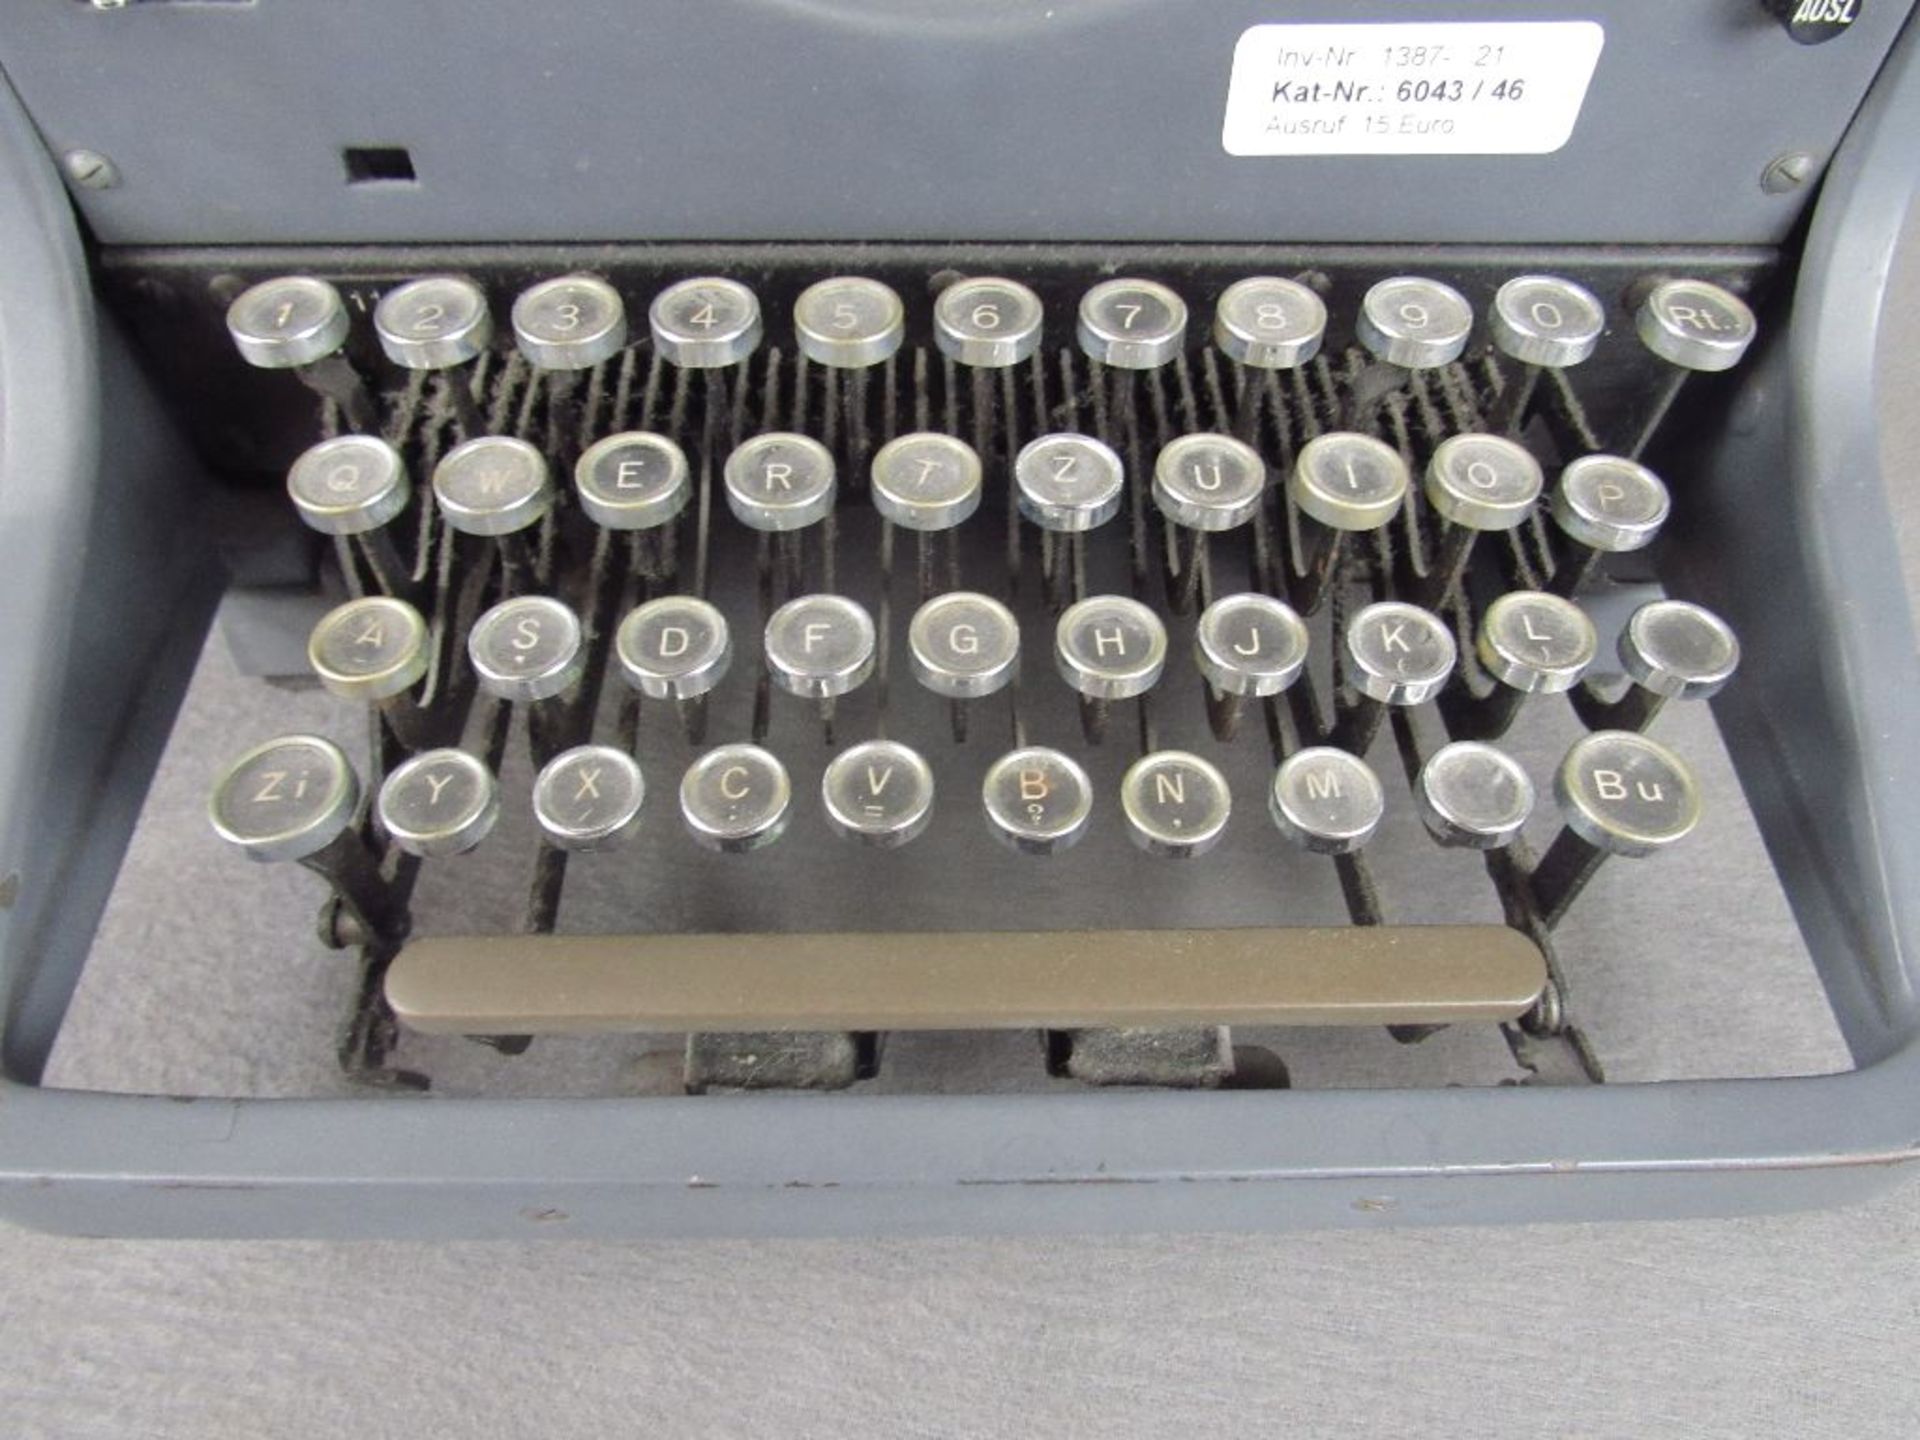 Militärische Schreibmaschine WL32 Glastasten - Bild 2 aus 4